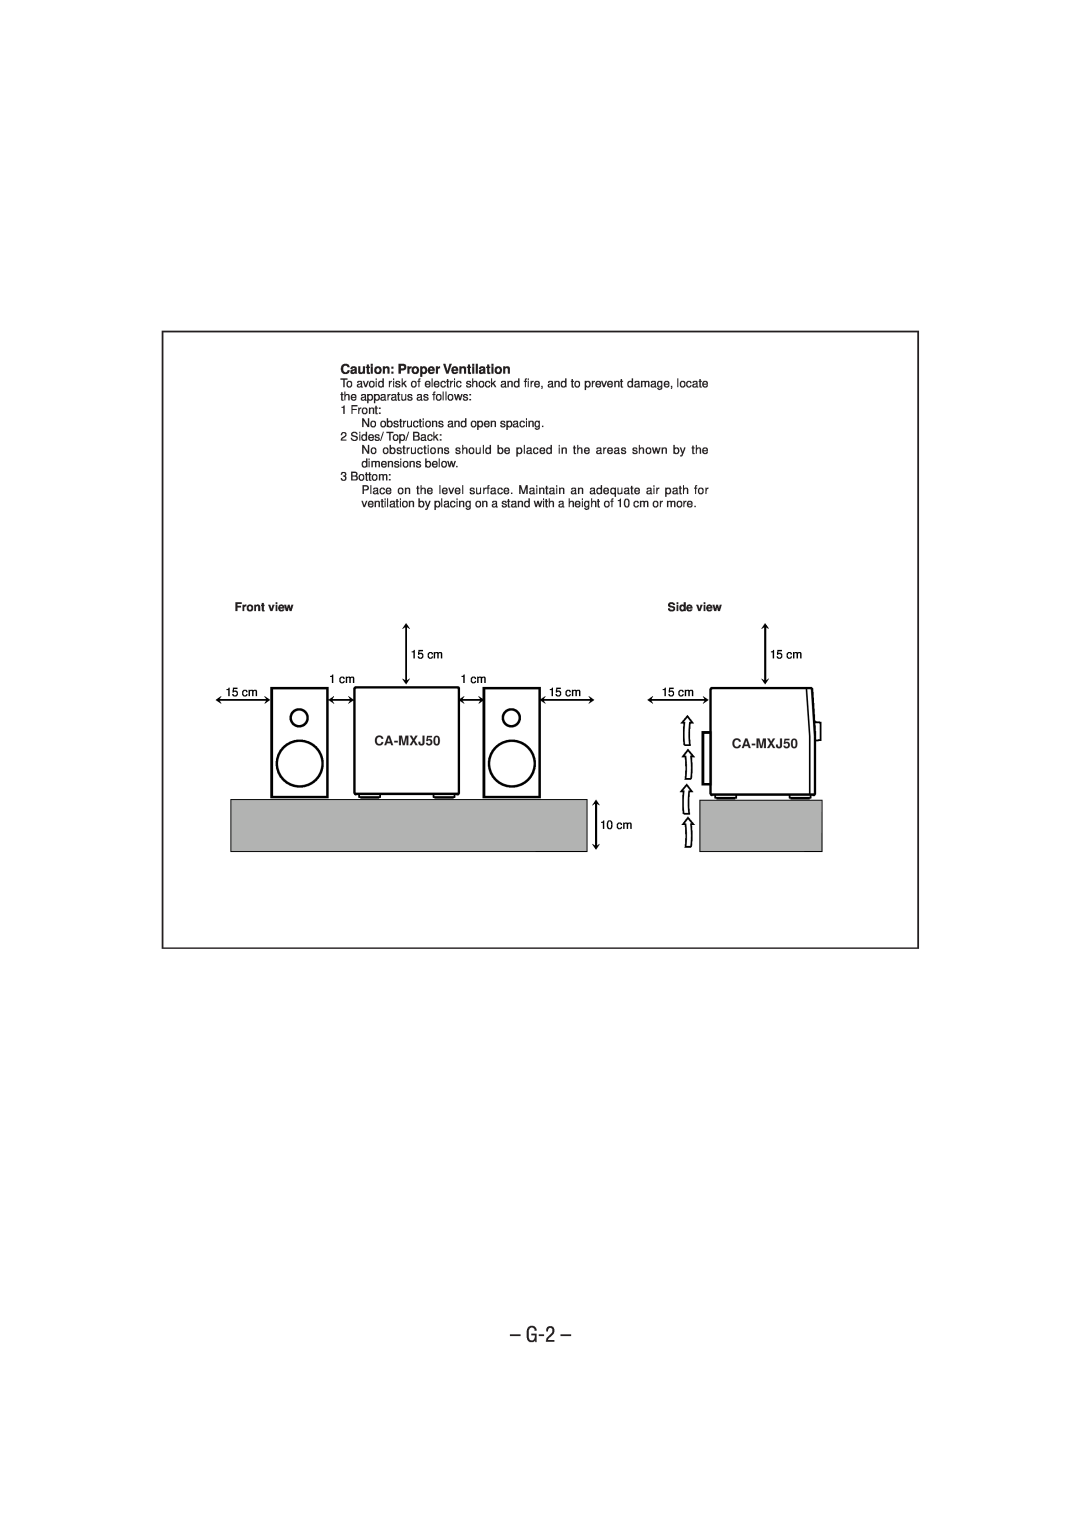 JVC MX-J50 manual G-2, Caution Proper Ventilation, CA-MXJ50, Front view, Side view 